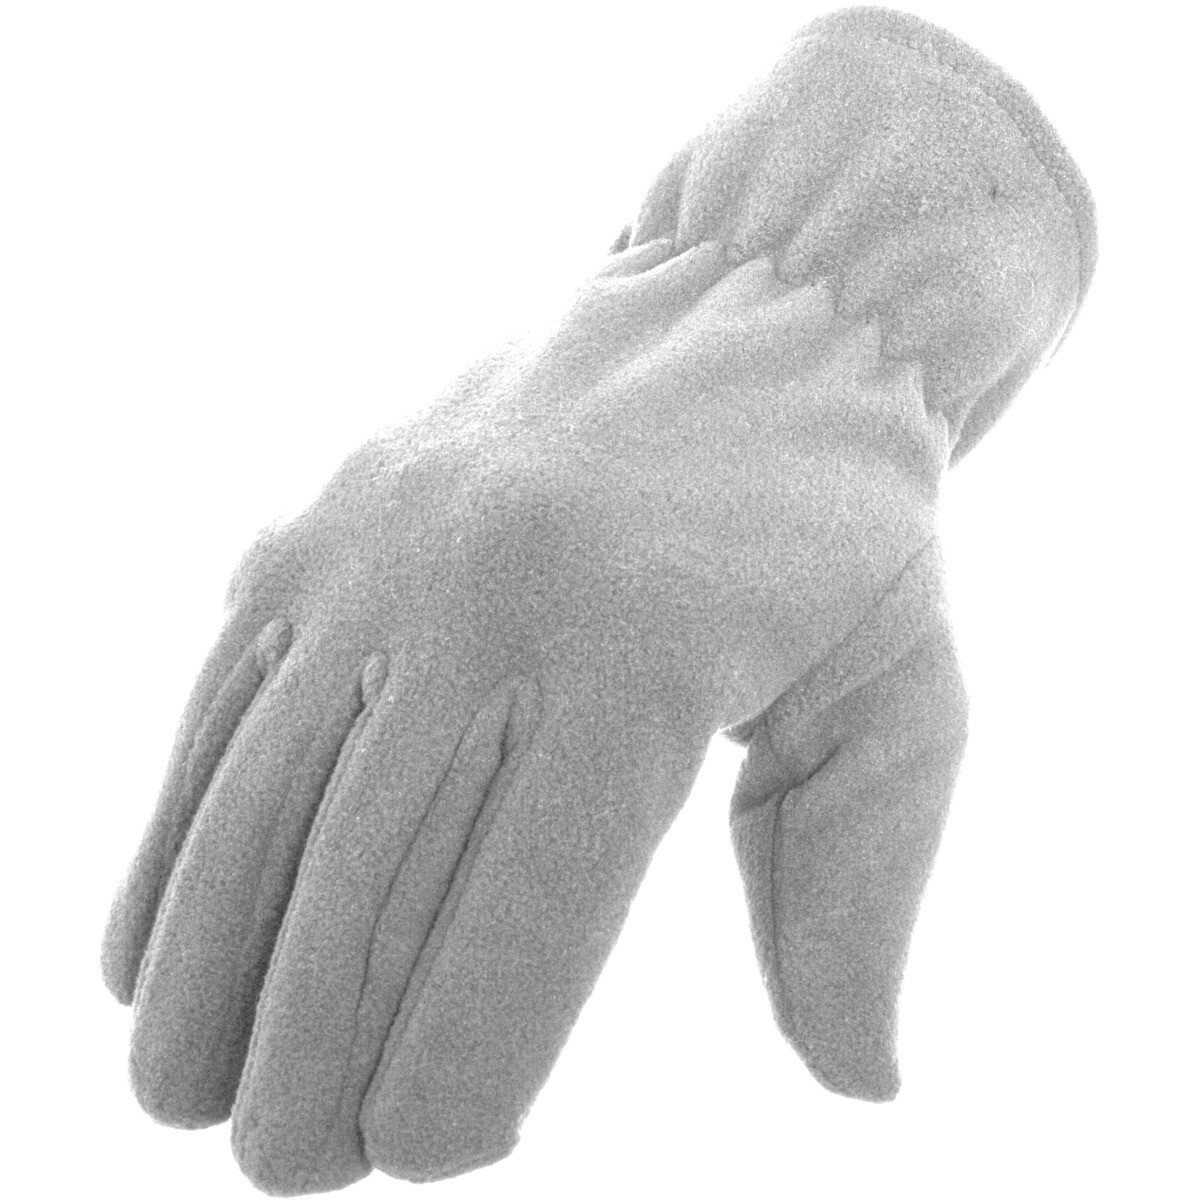 Knitted Gloves, Grösse: S/M